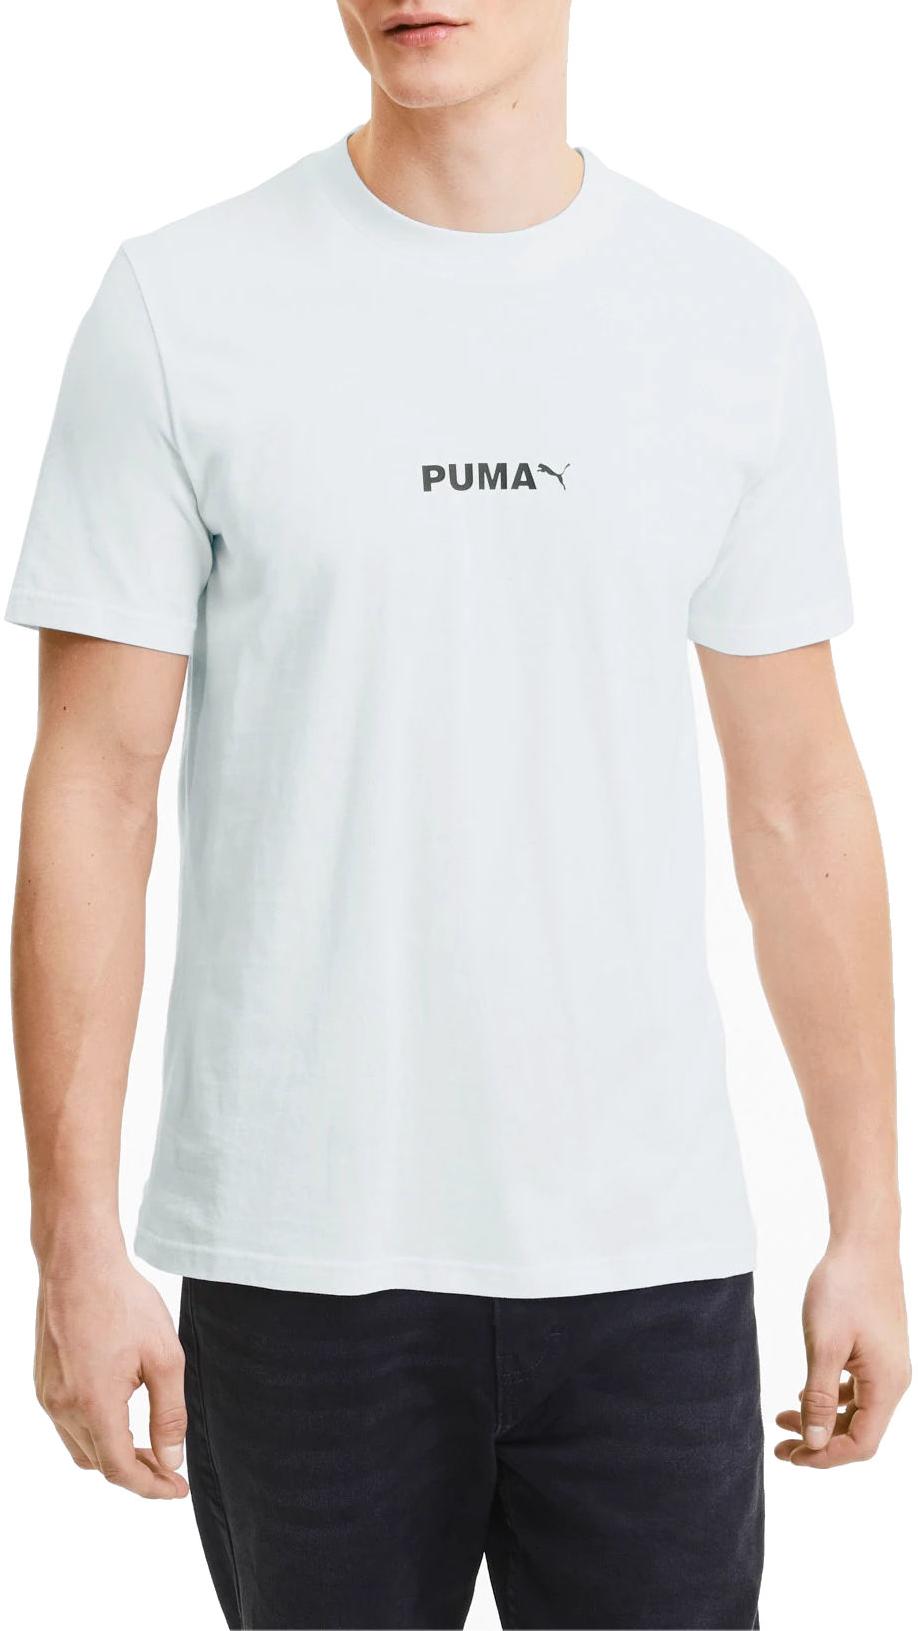 Camiseta Puma Avenir Graphic Tee